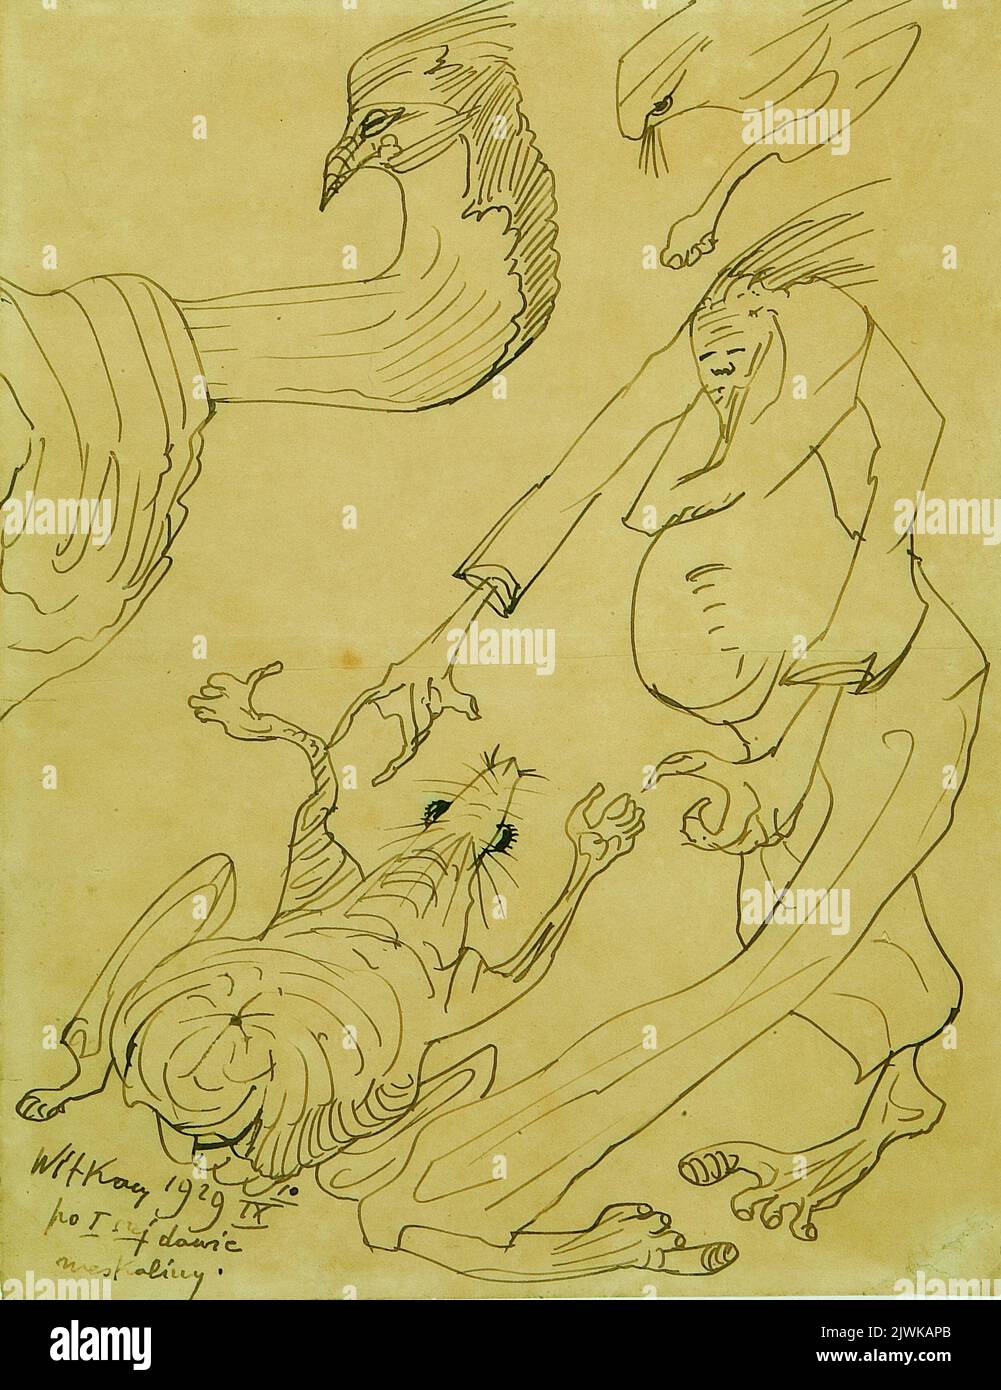 Zeichnung nach der ersten Dosis Meskalin. Witkiewicz, Stanisław Ignacy (1885-1939), Zeichner, Karikaturist Stockfoto